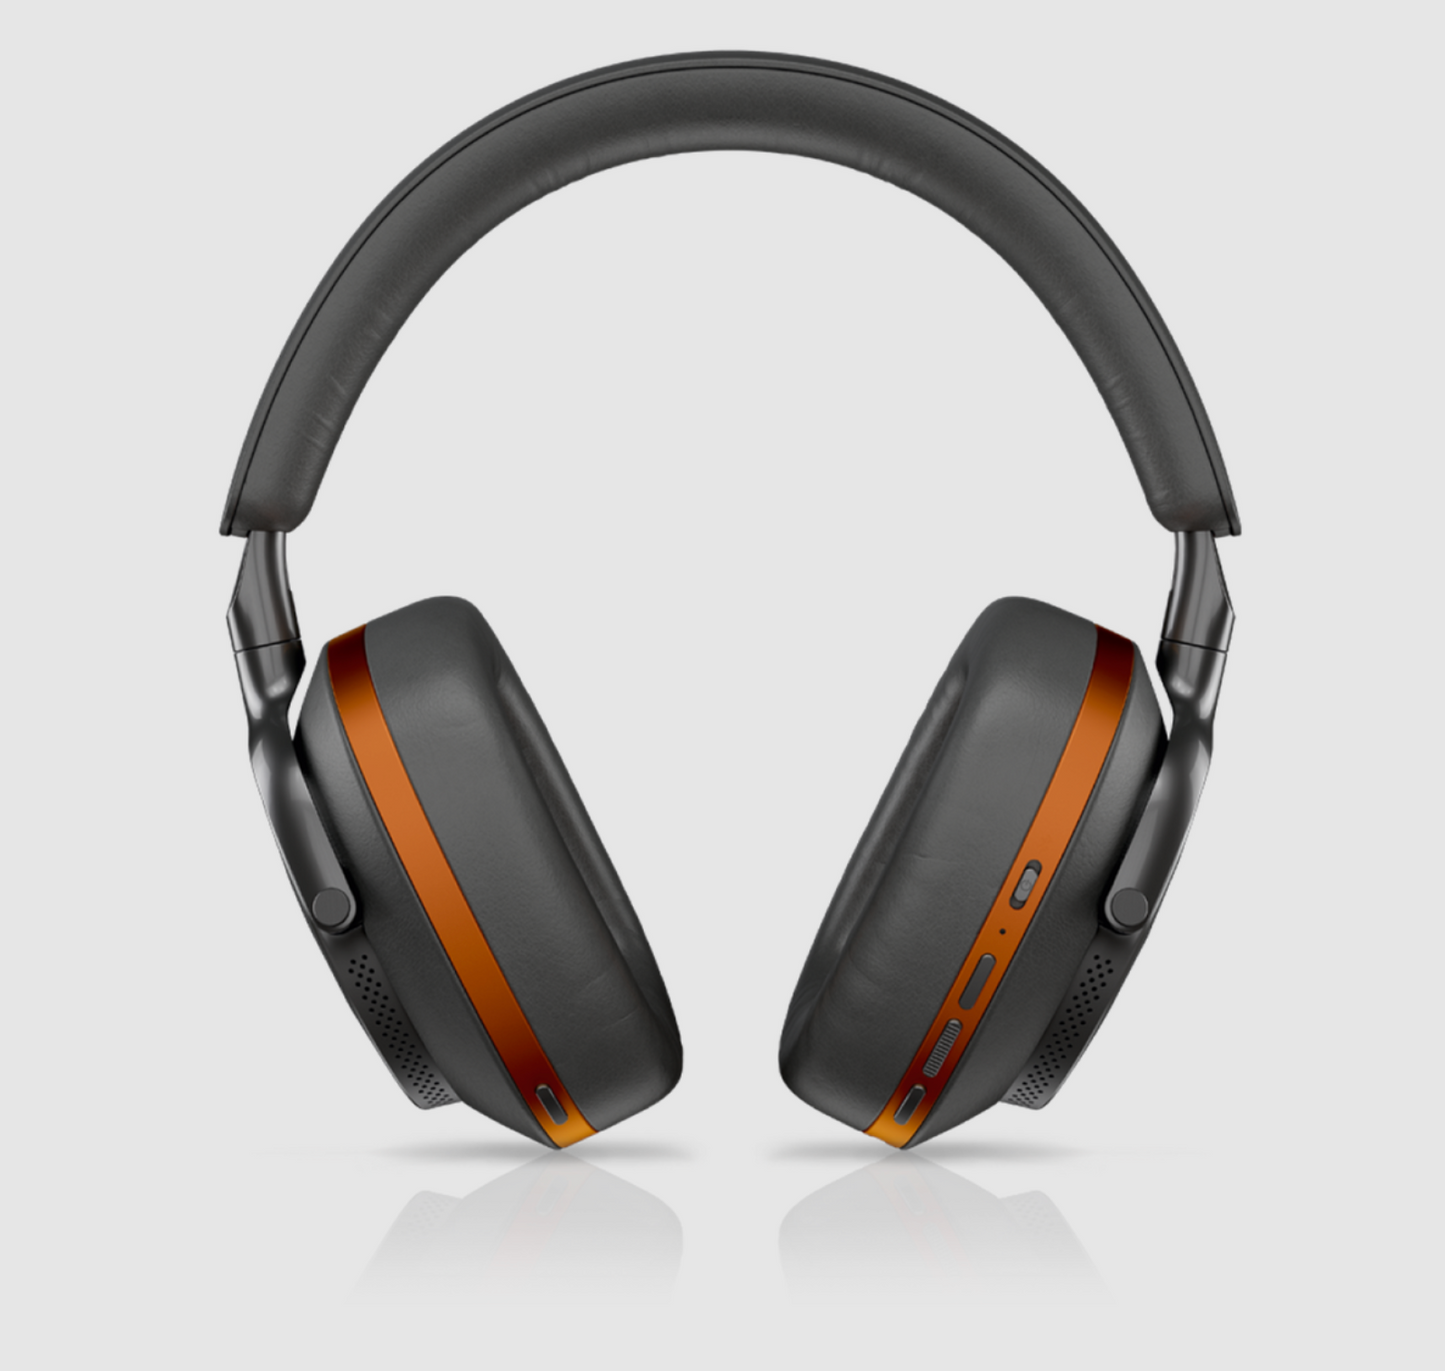 B&W Px8 McLaren Edition Noise Cancelling Headphones, image shows controls